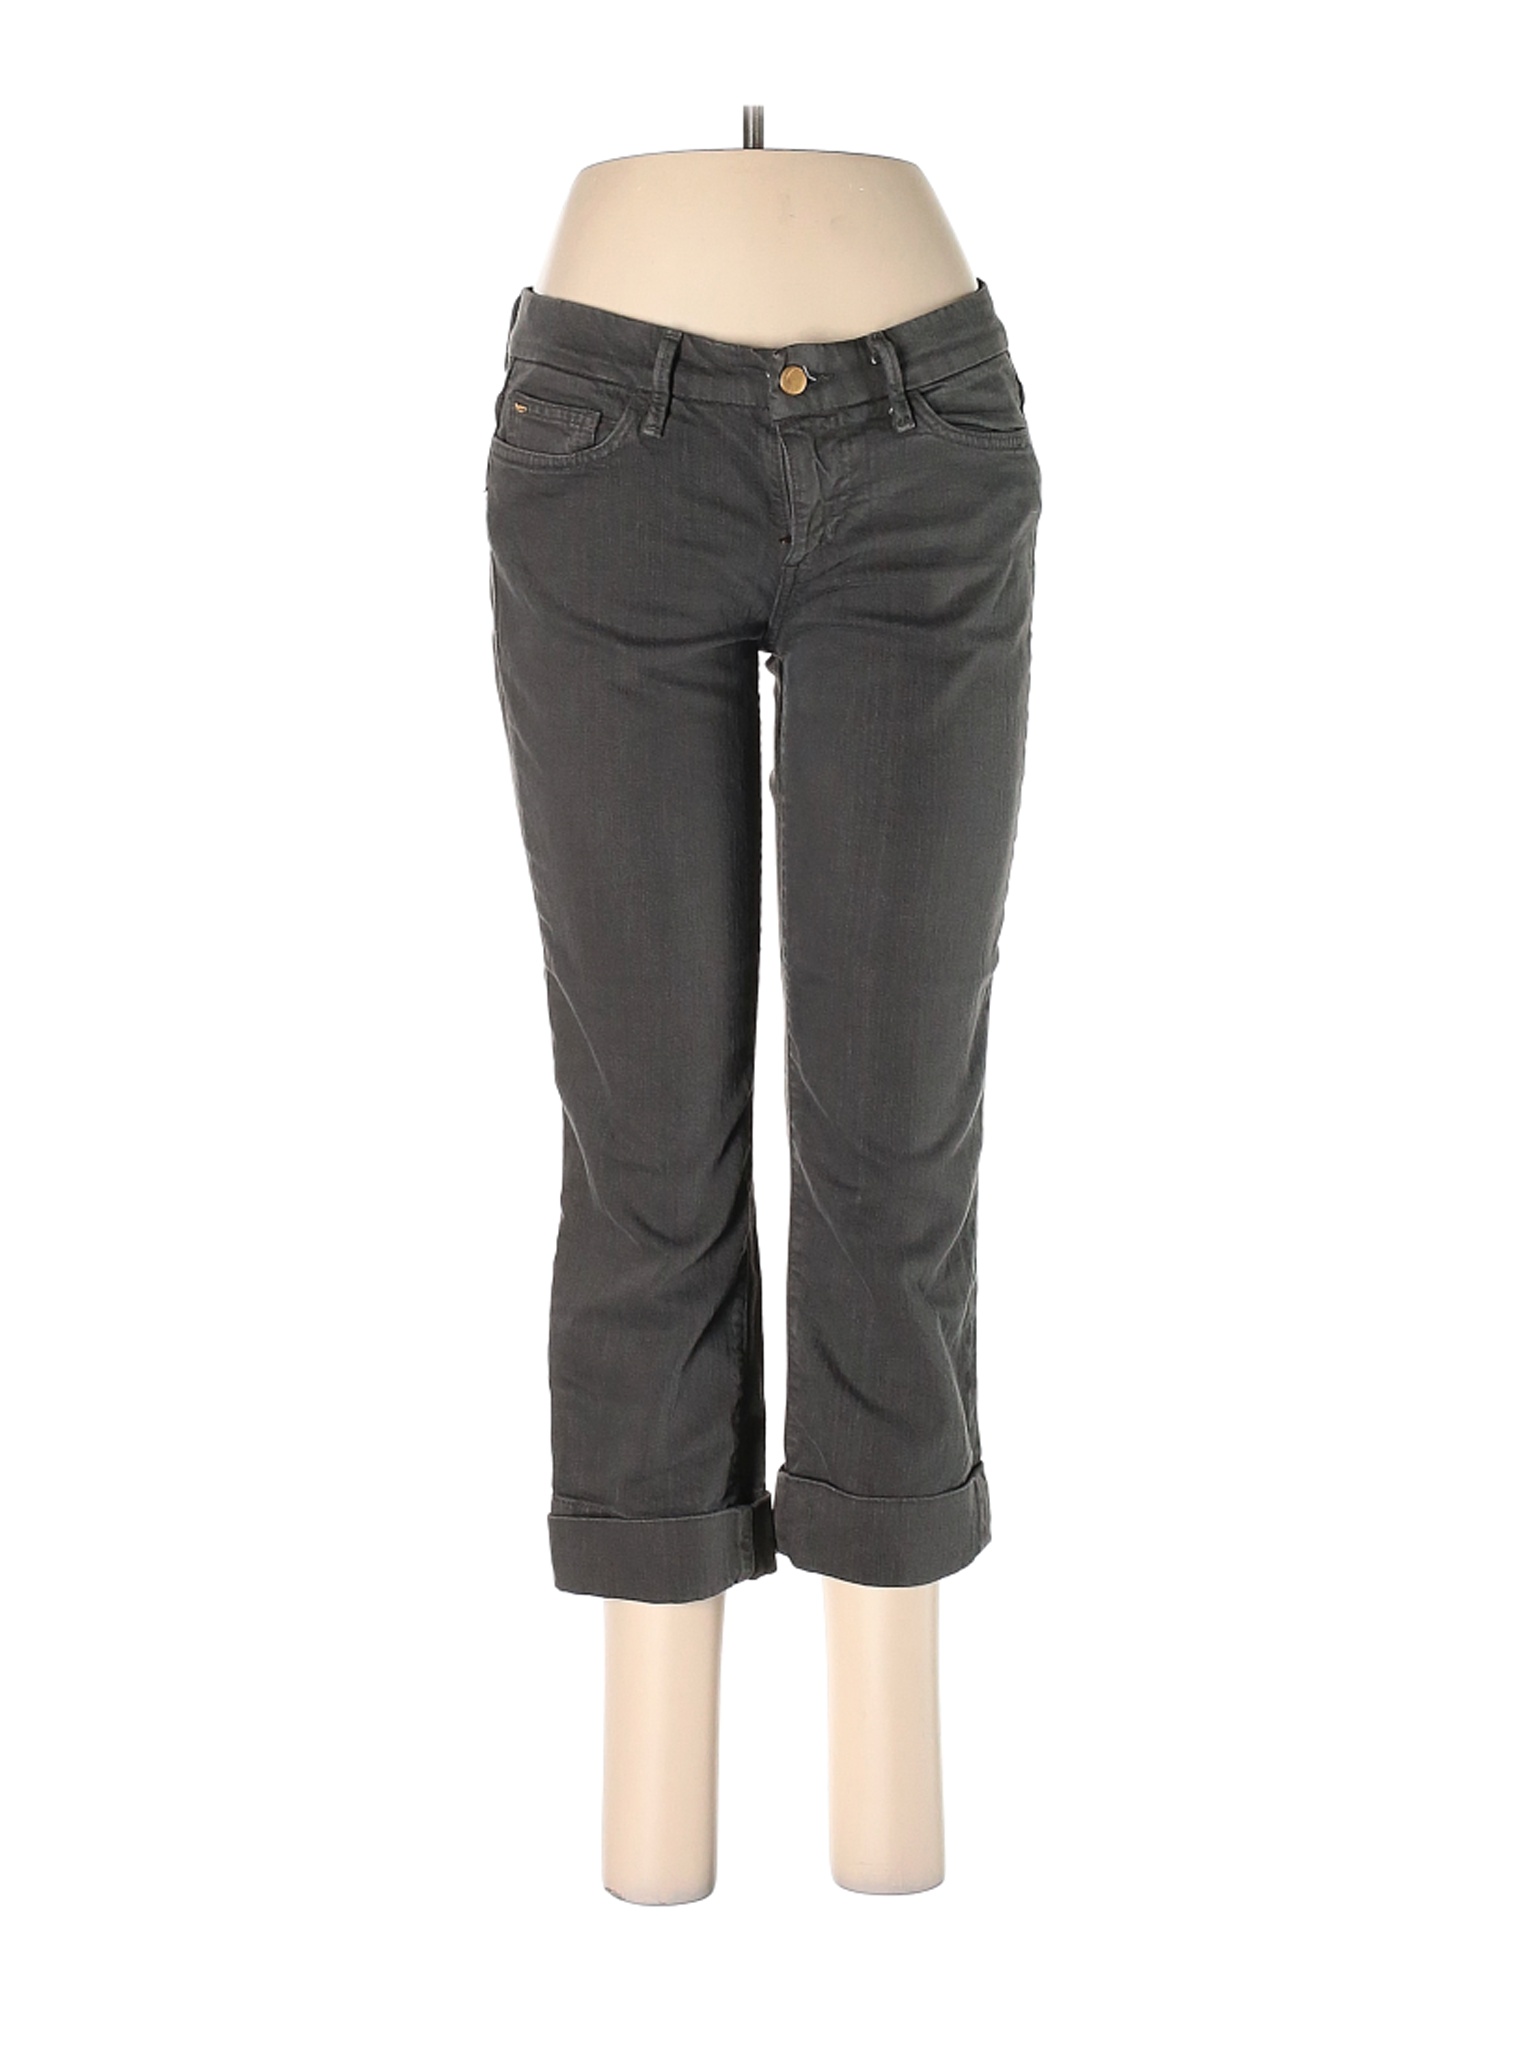 Joe's Jeans Women Gray Jeans 28W | eBay